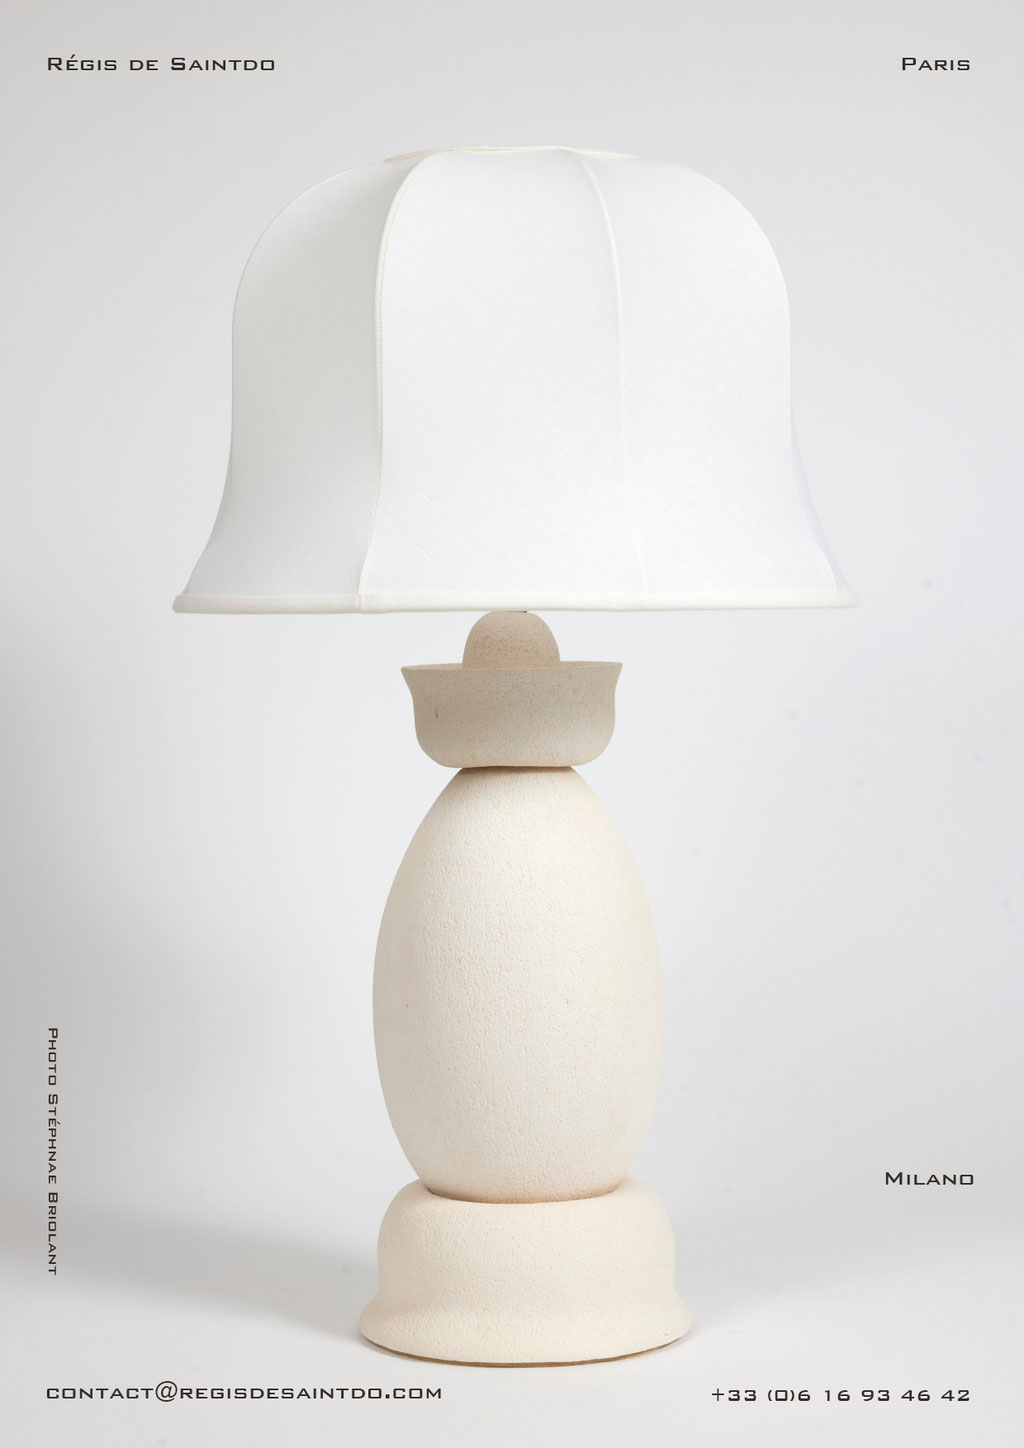 Lamp Milano -white textured ceramic-handmade